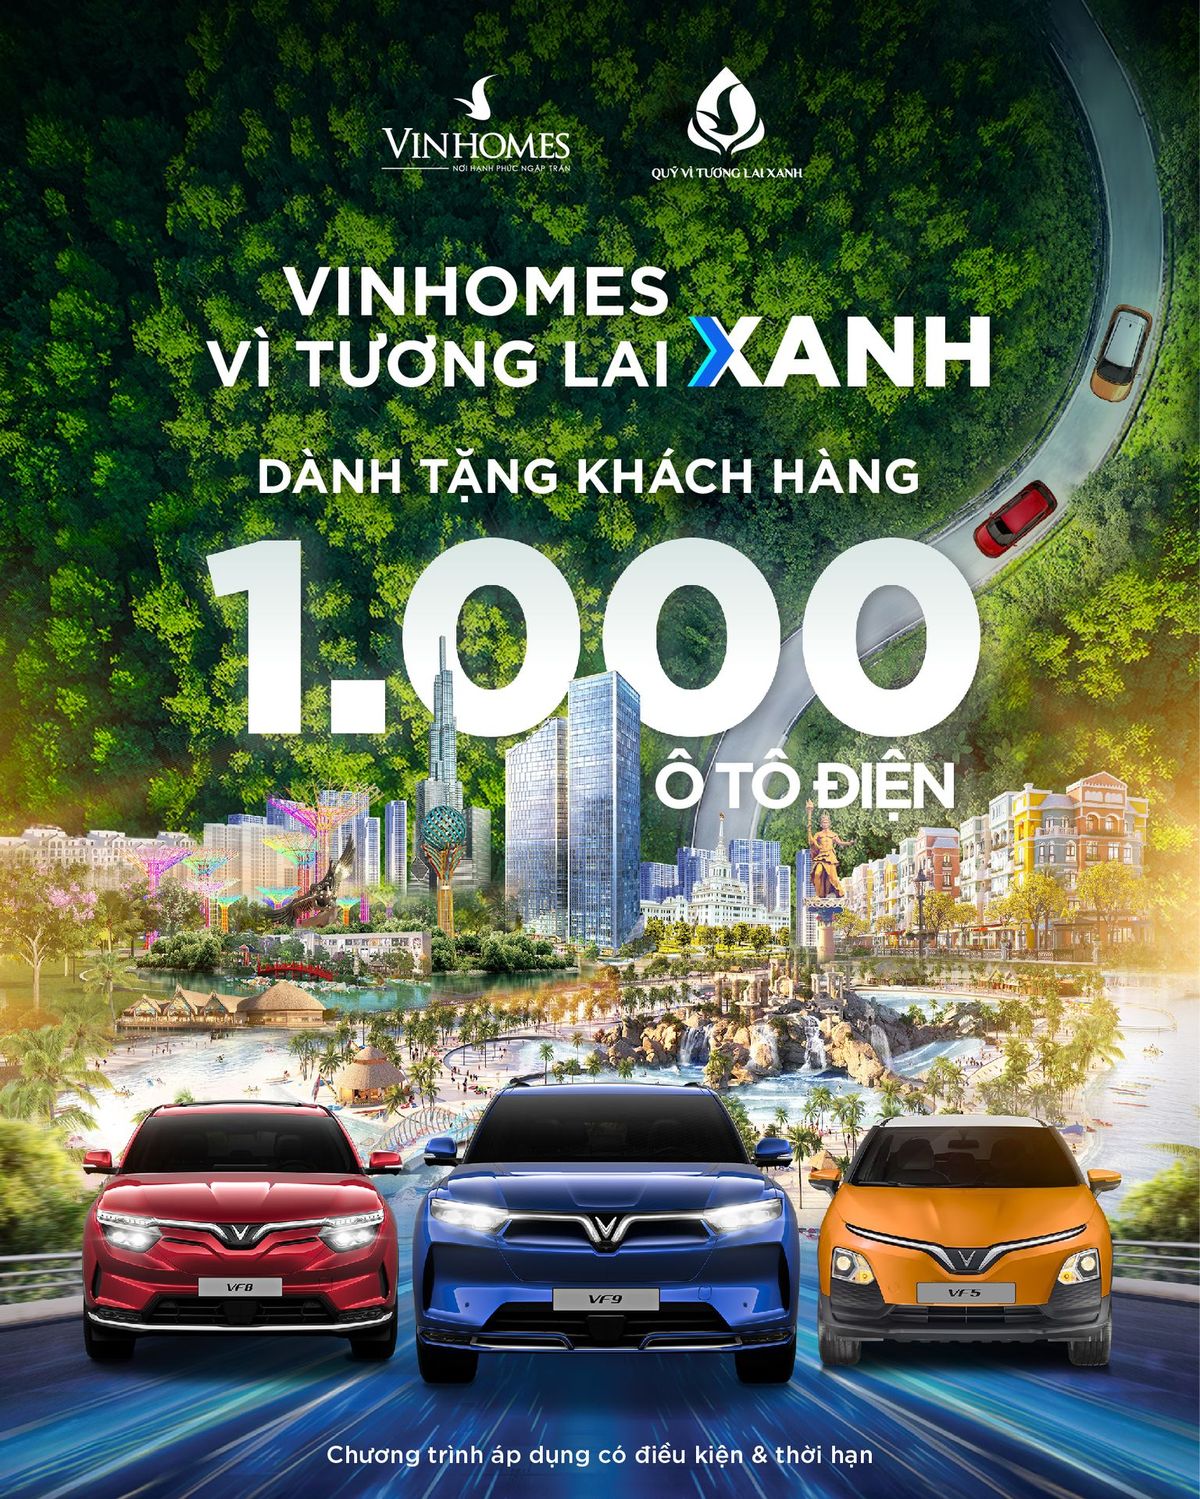 1.000 chiếc xe điện Vinfast được trao tới tay khách hàng của Vinhomes